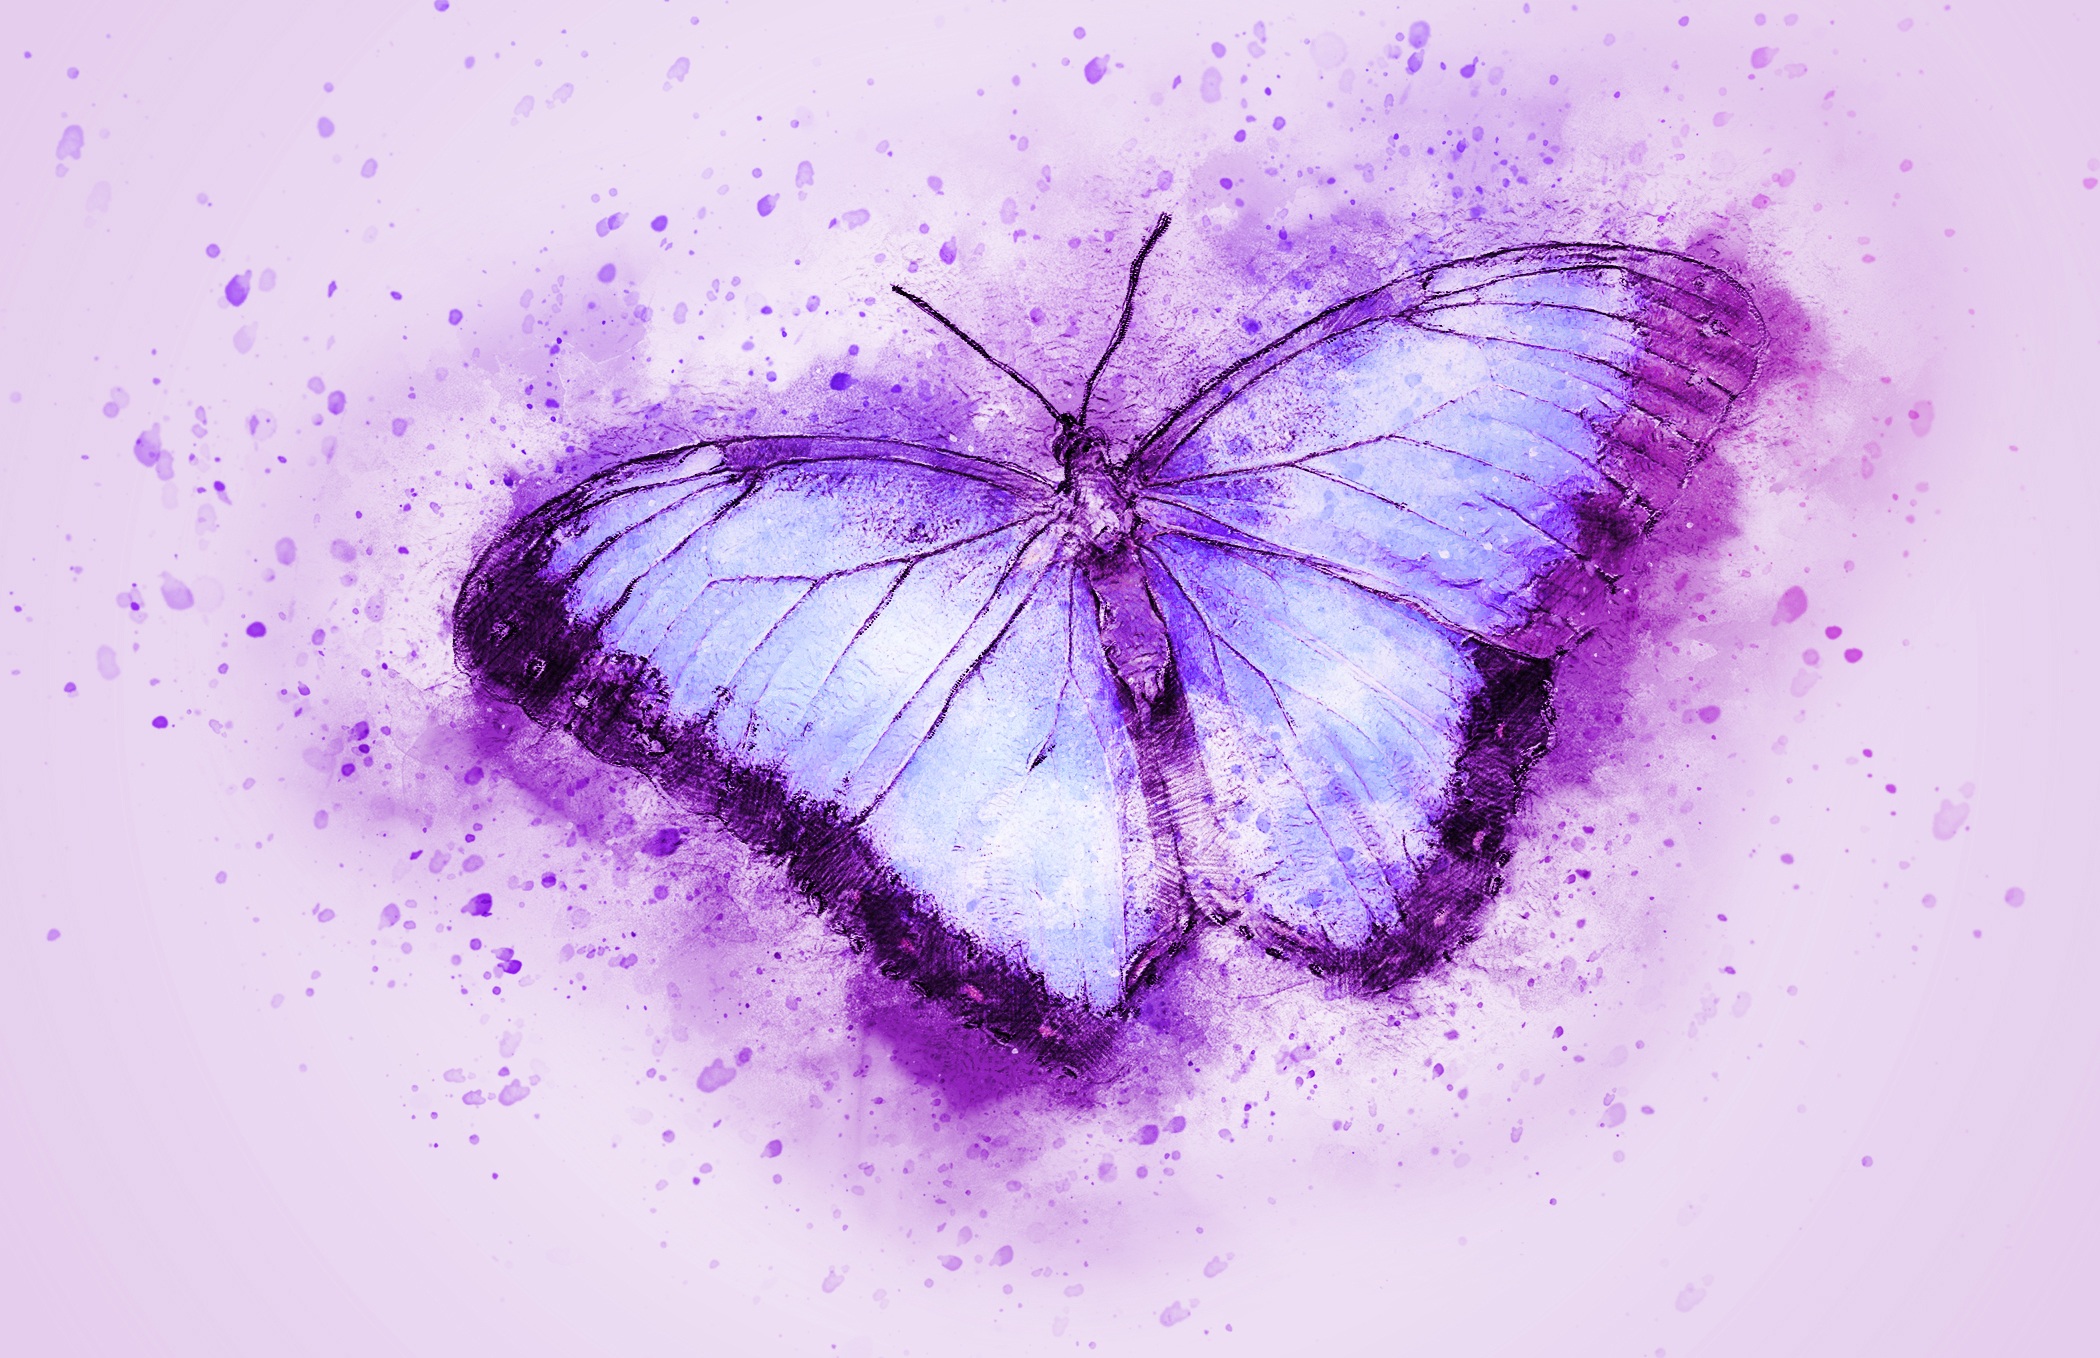 Với nghệ thuật tranh phác họa độc đáo, Watercolor Butterfly Art chắc chắn sẽ khiến bạn mê mẩn bởi sự sáng tạo đầy màu sắc và cảm xúc.